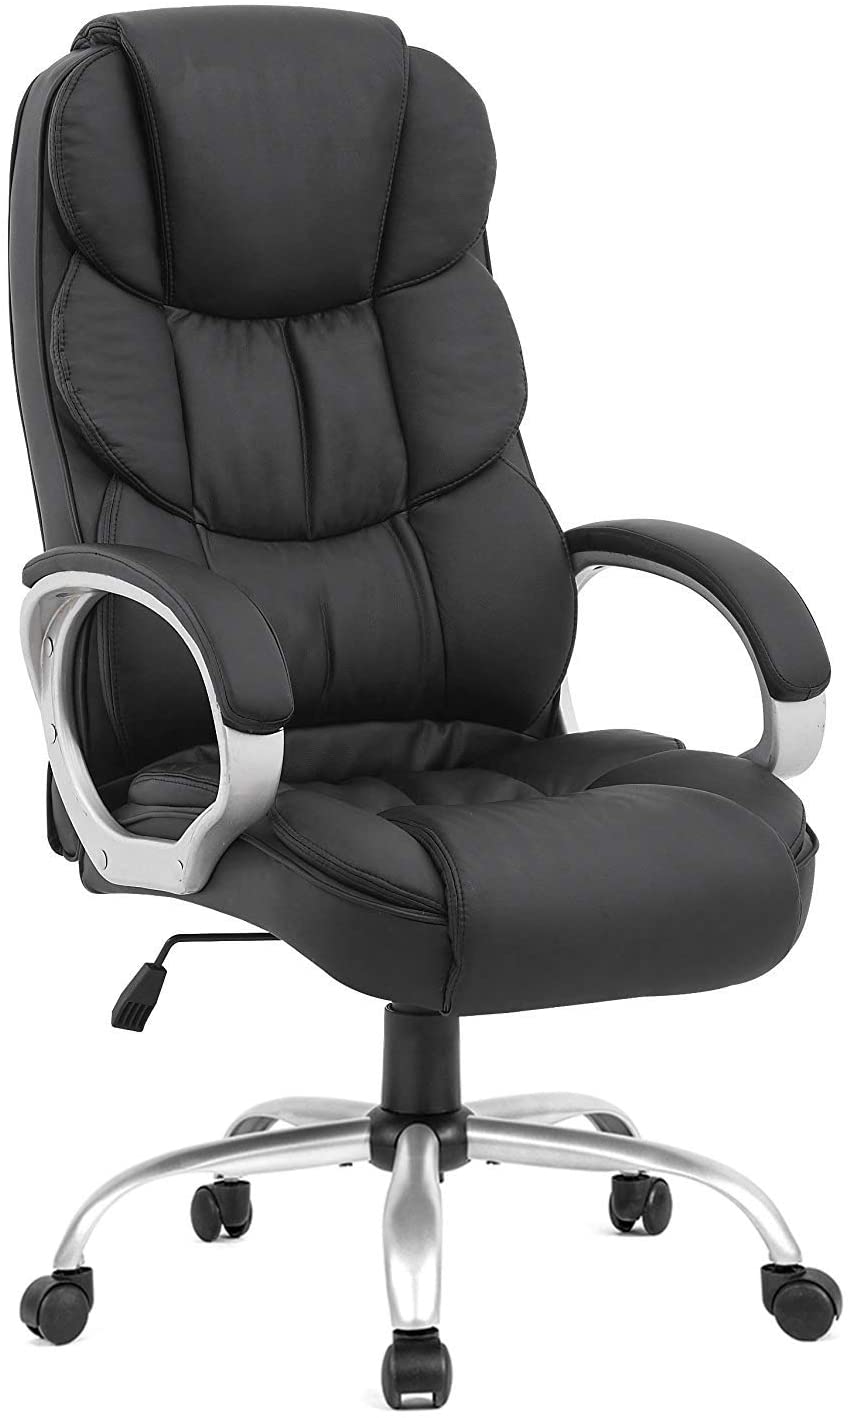 ergonomic chair amazon